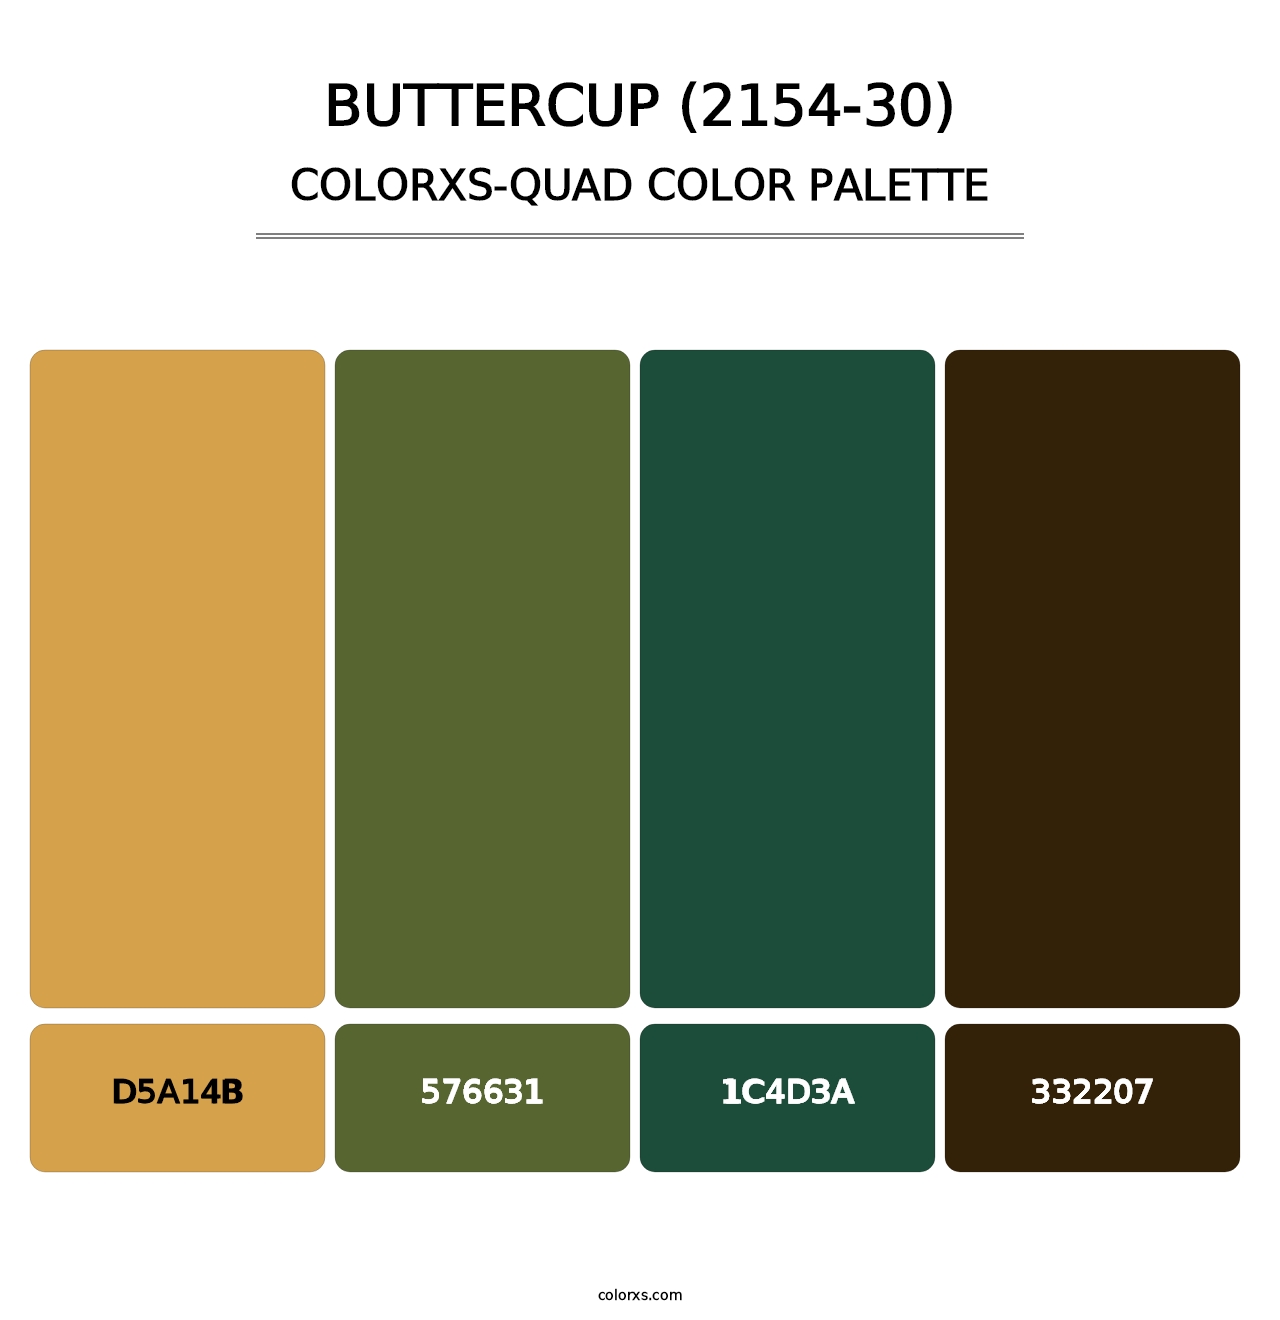 Buttercup (2154-30) - Colorxs Quad Palette